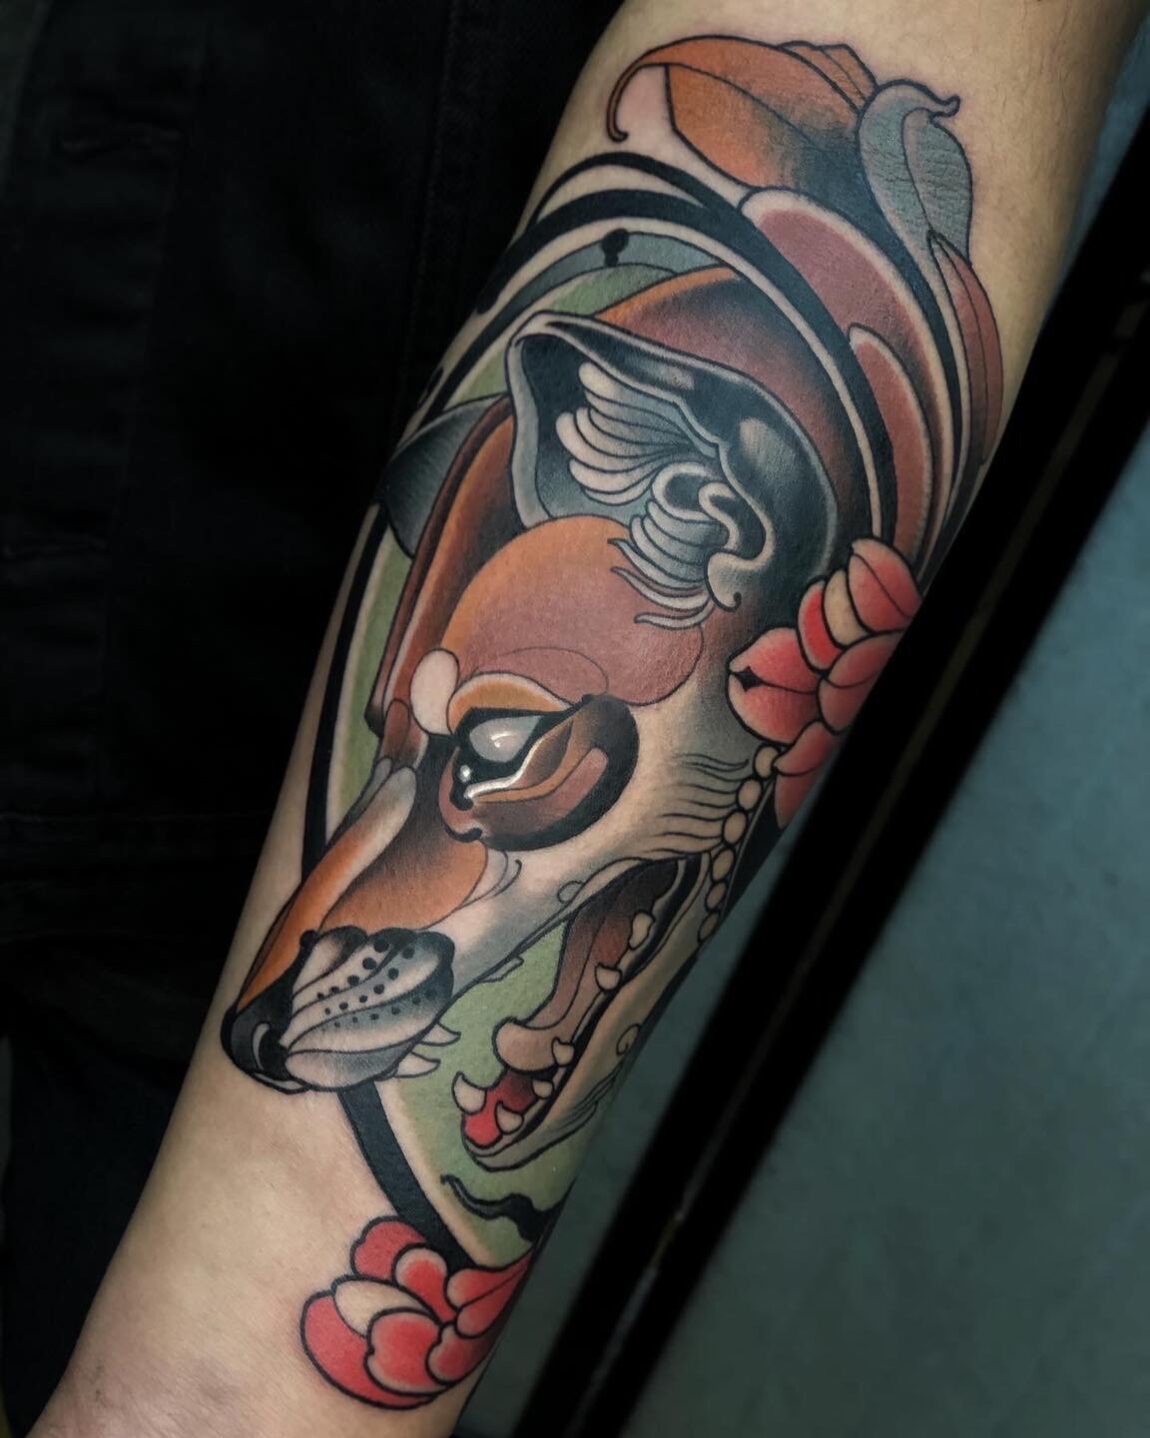 Chris Arroyo, Nueva Sangre Tattoo, Ciudad de Mexico, Mexico